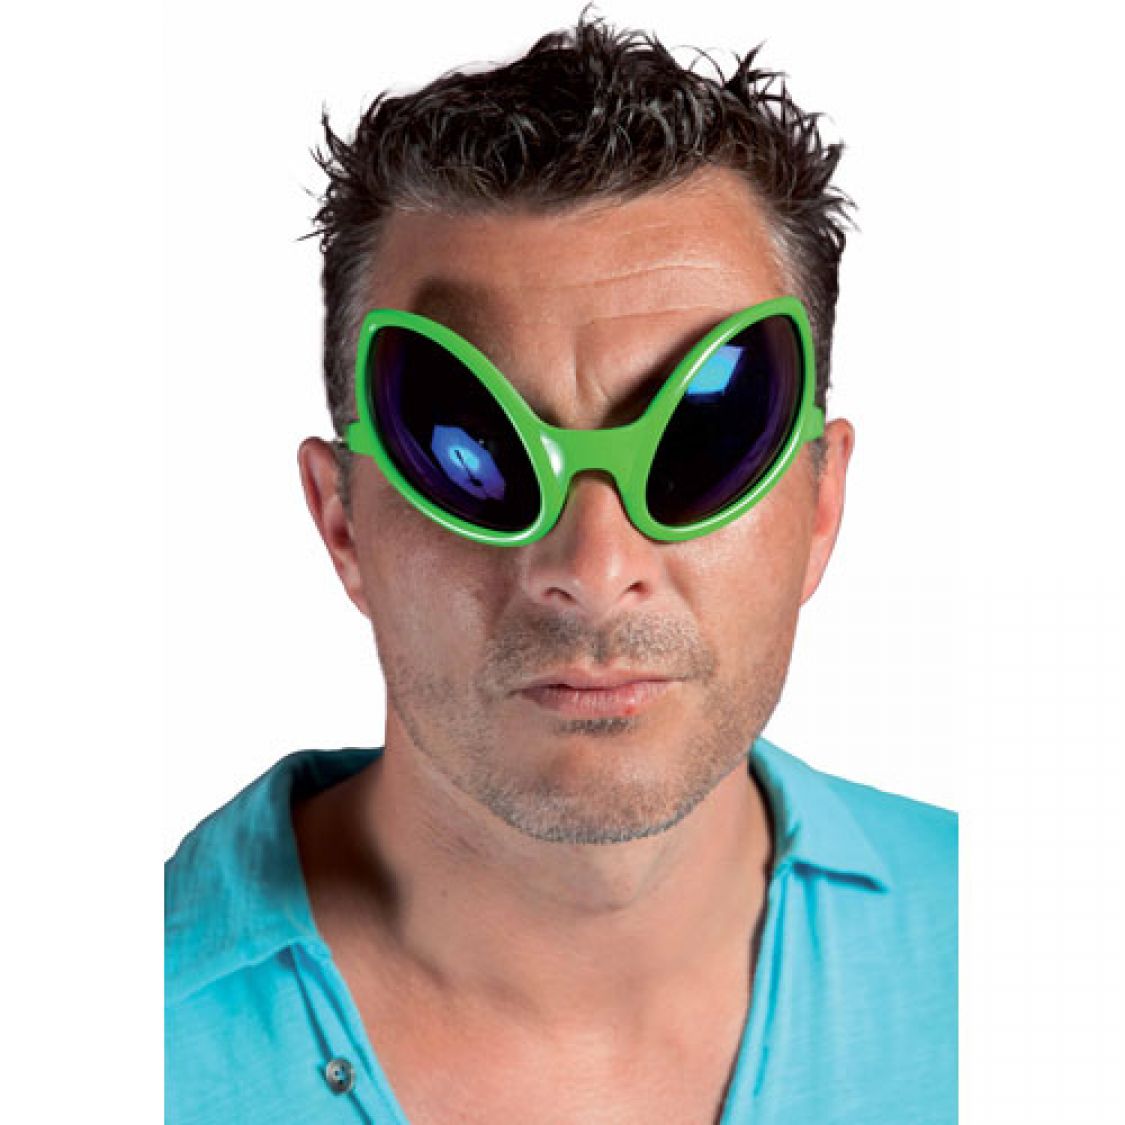 hors-sol carnaval vertes Boland Lunettes de Fête 02629 – Lunettes de fête alien pour adulte Halloween lunettes amusantes lunettes pour carnaval fête à thème Mixte 